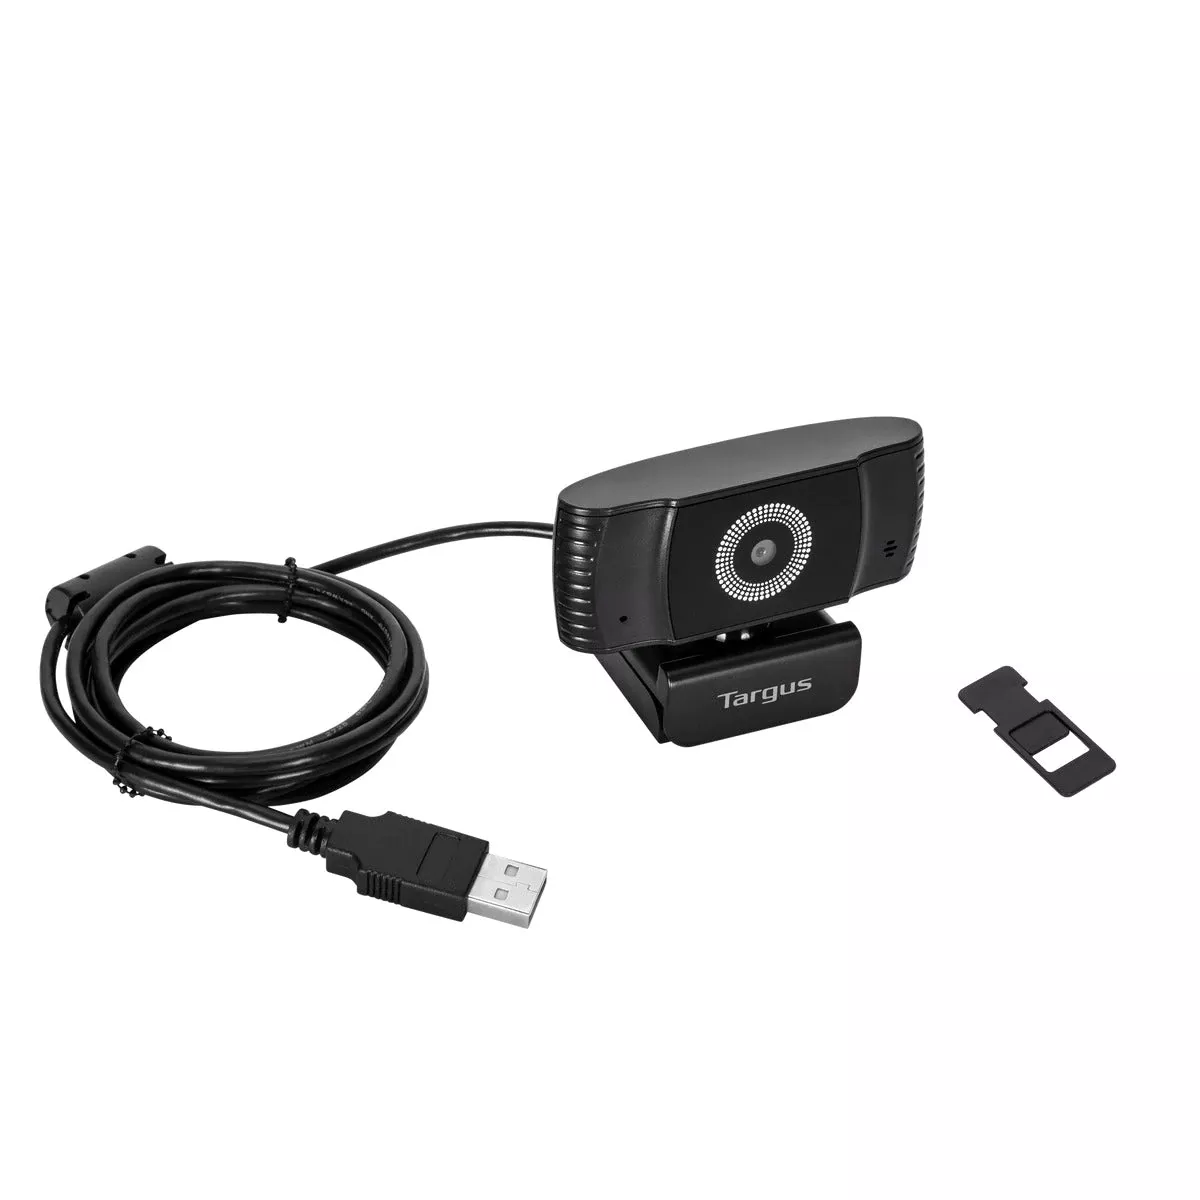 Achat TARGUS Webcam Plus Full HD 1080p Webcam with sur hello RSE - visuel 3